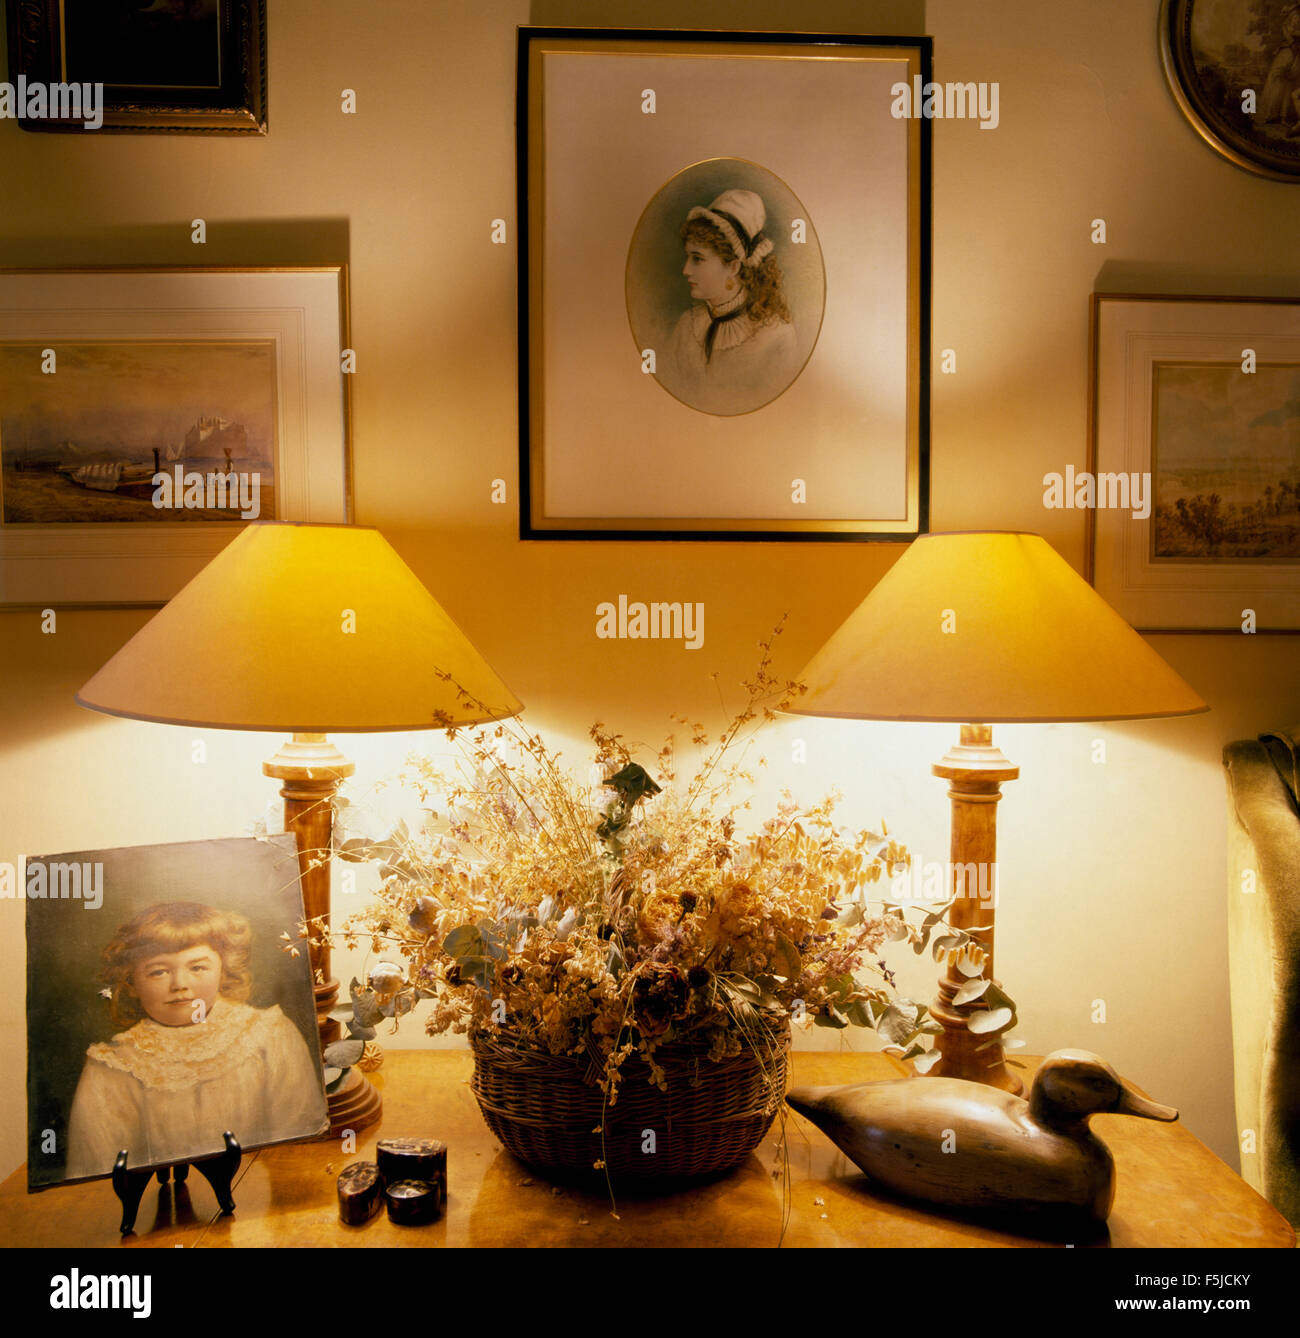 Le immagini sulla parete sopra le lampade illuminate su entrambi i lati di una ciotola di fiori secchi su un tavolo a lato in un ottanta sala da pranzo Foto Stock